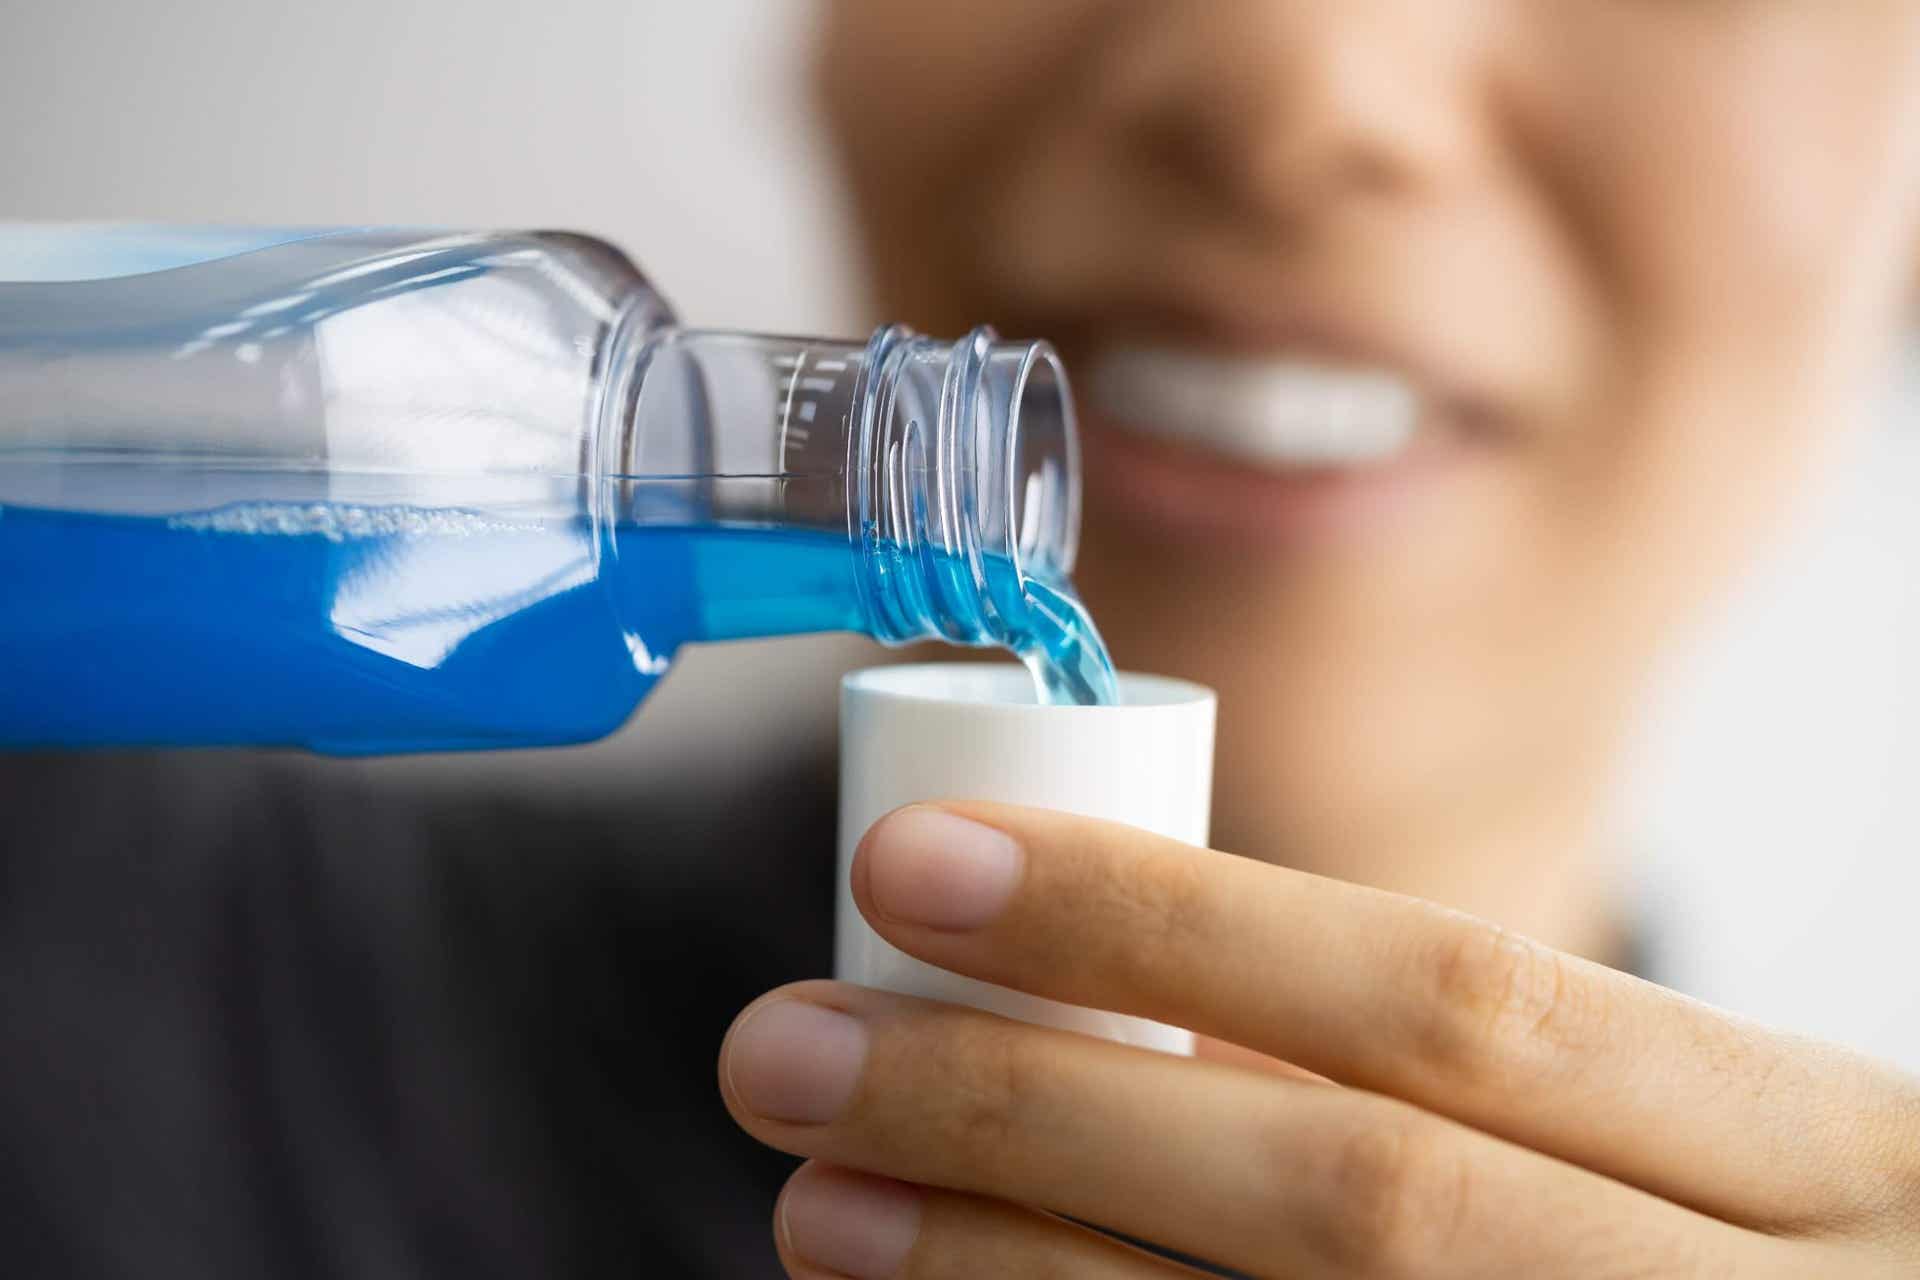 Bain de bouche pour nettoyer la brosse à dents électrique.